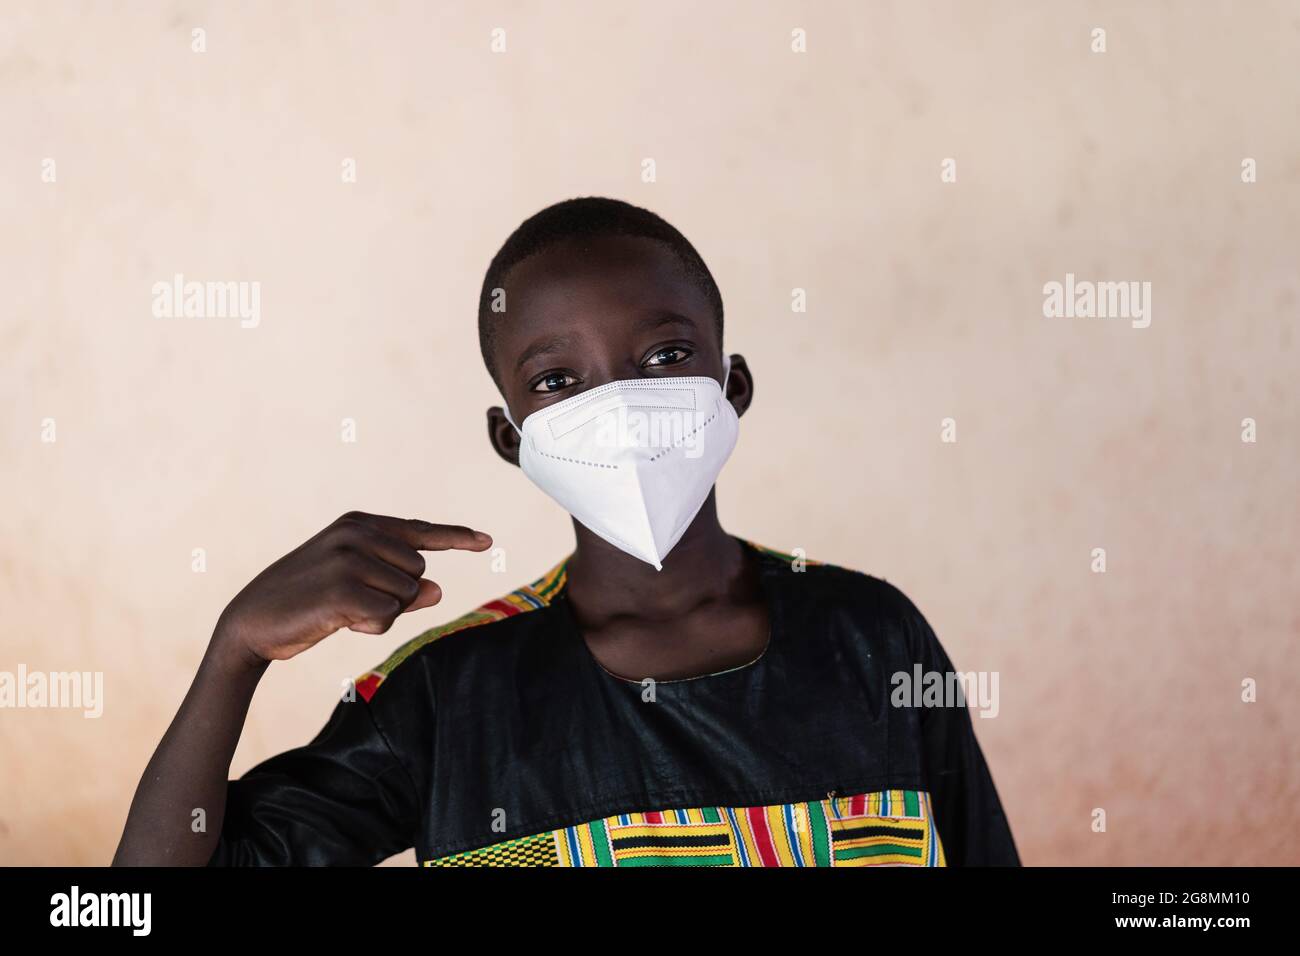 Questa è un'immagine di un piccolo ragazzo africano che guarda la macchina fotografica e punta il dito verso la sua maschera che indossa per proteggersi Foto Stock